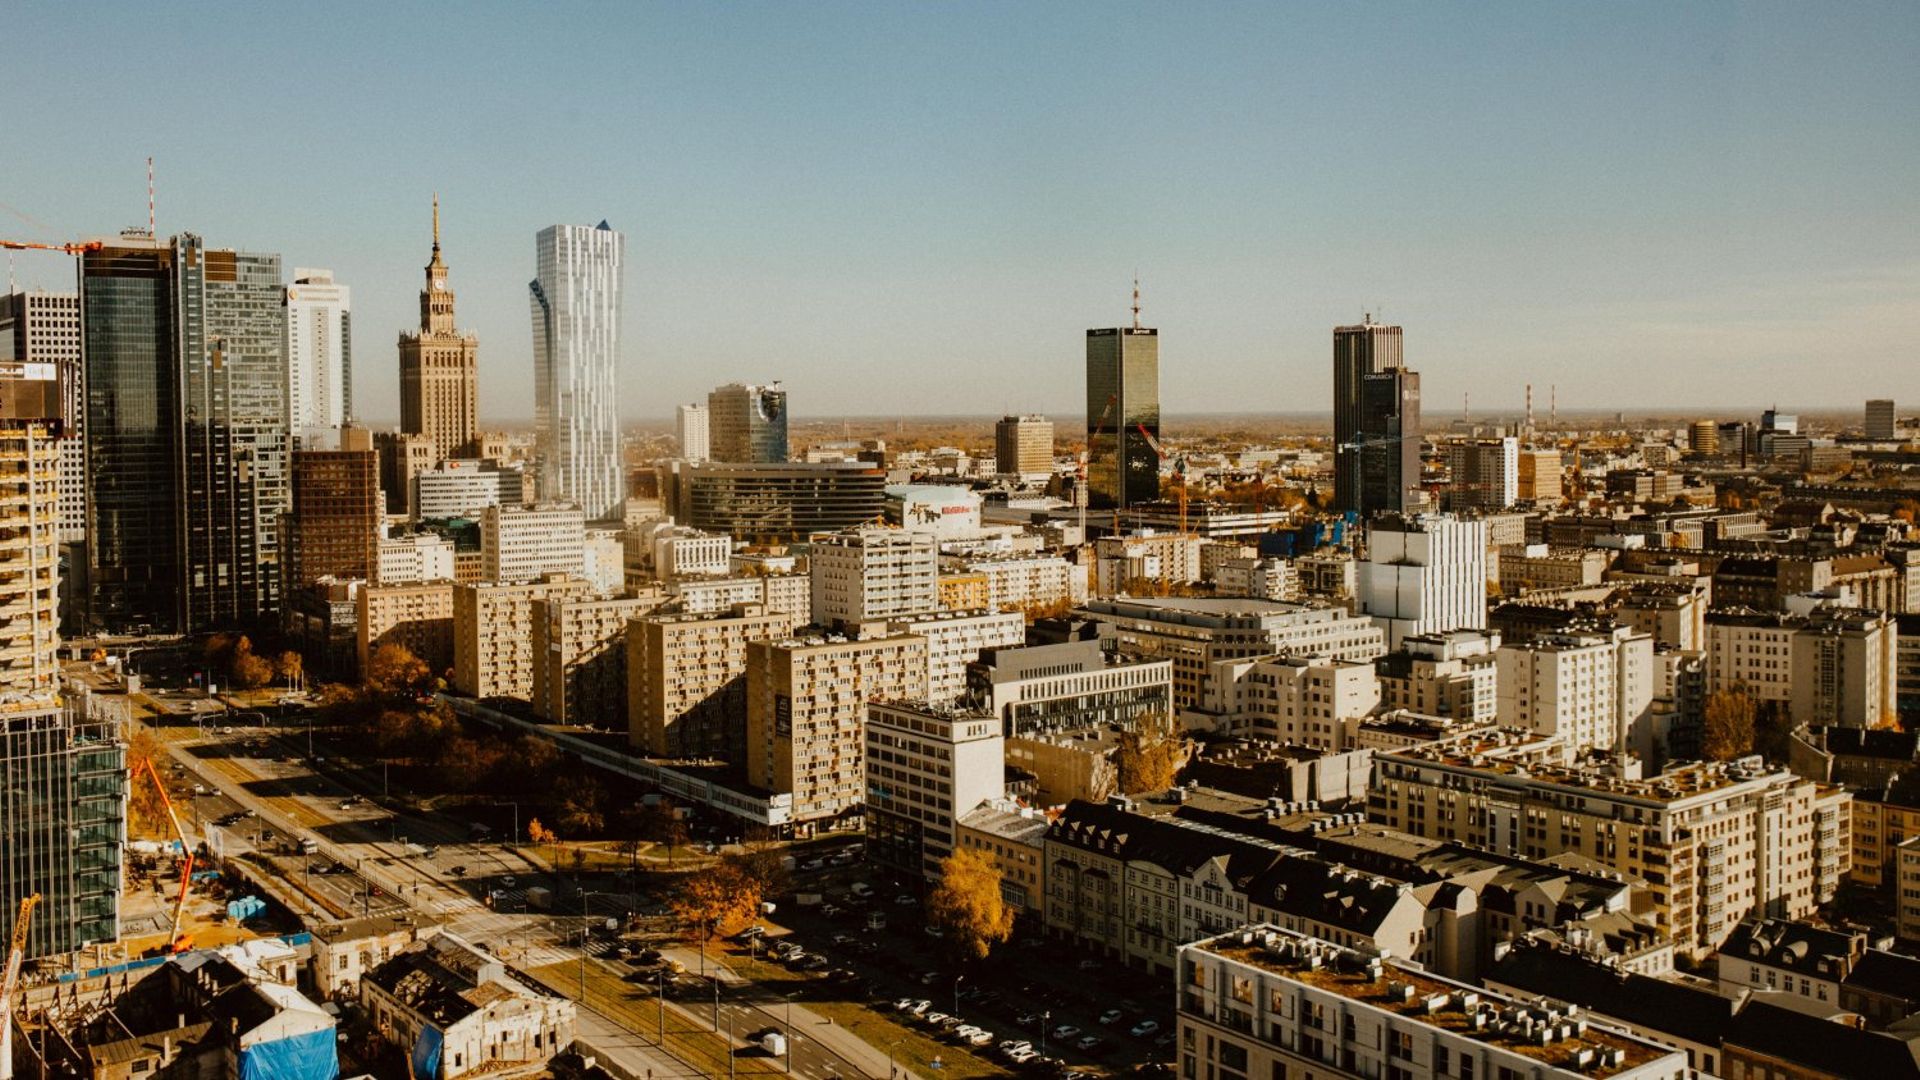  Popyt nie zwalnia a dostępność powierzchni biurowej w Warszawie maleje